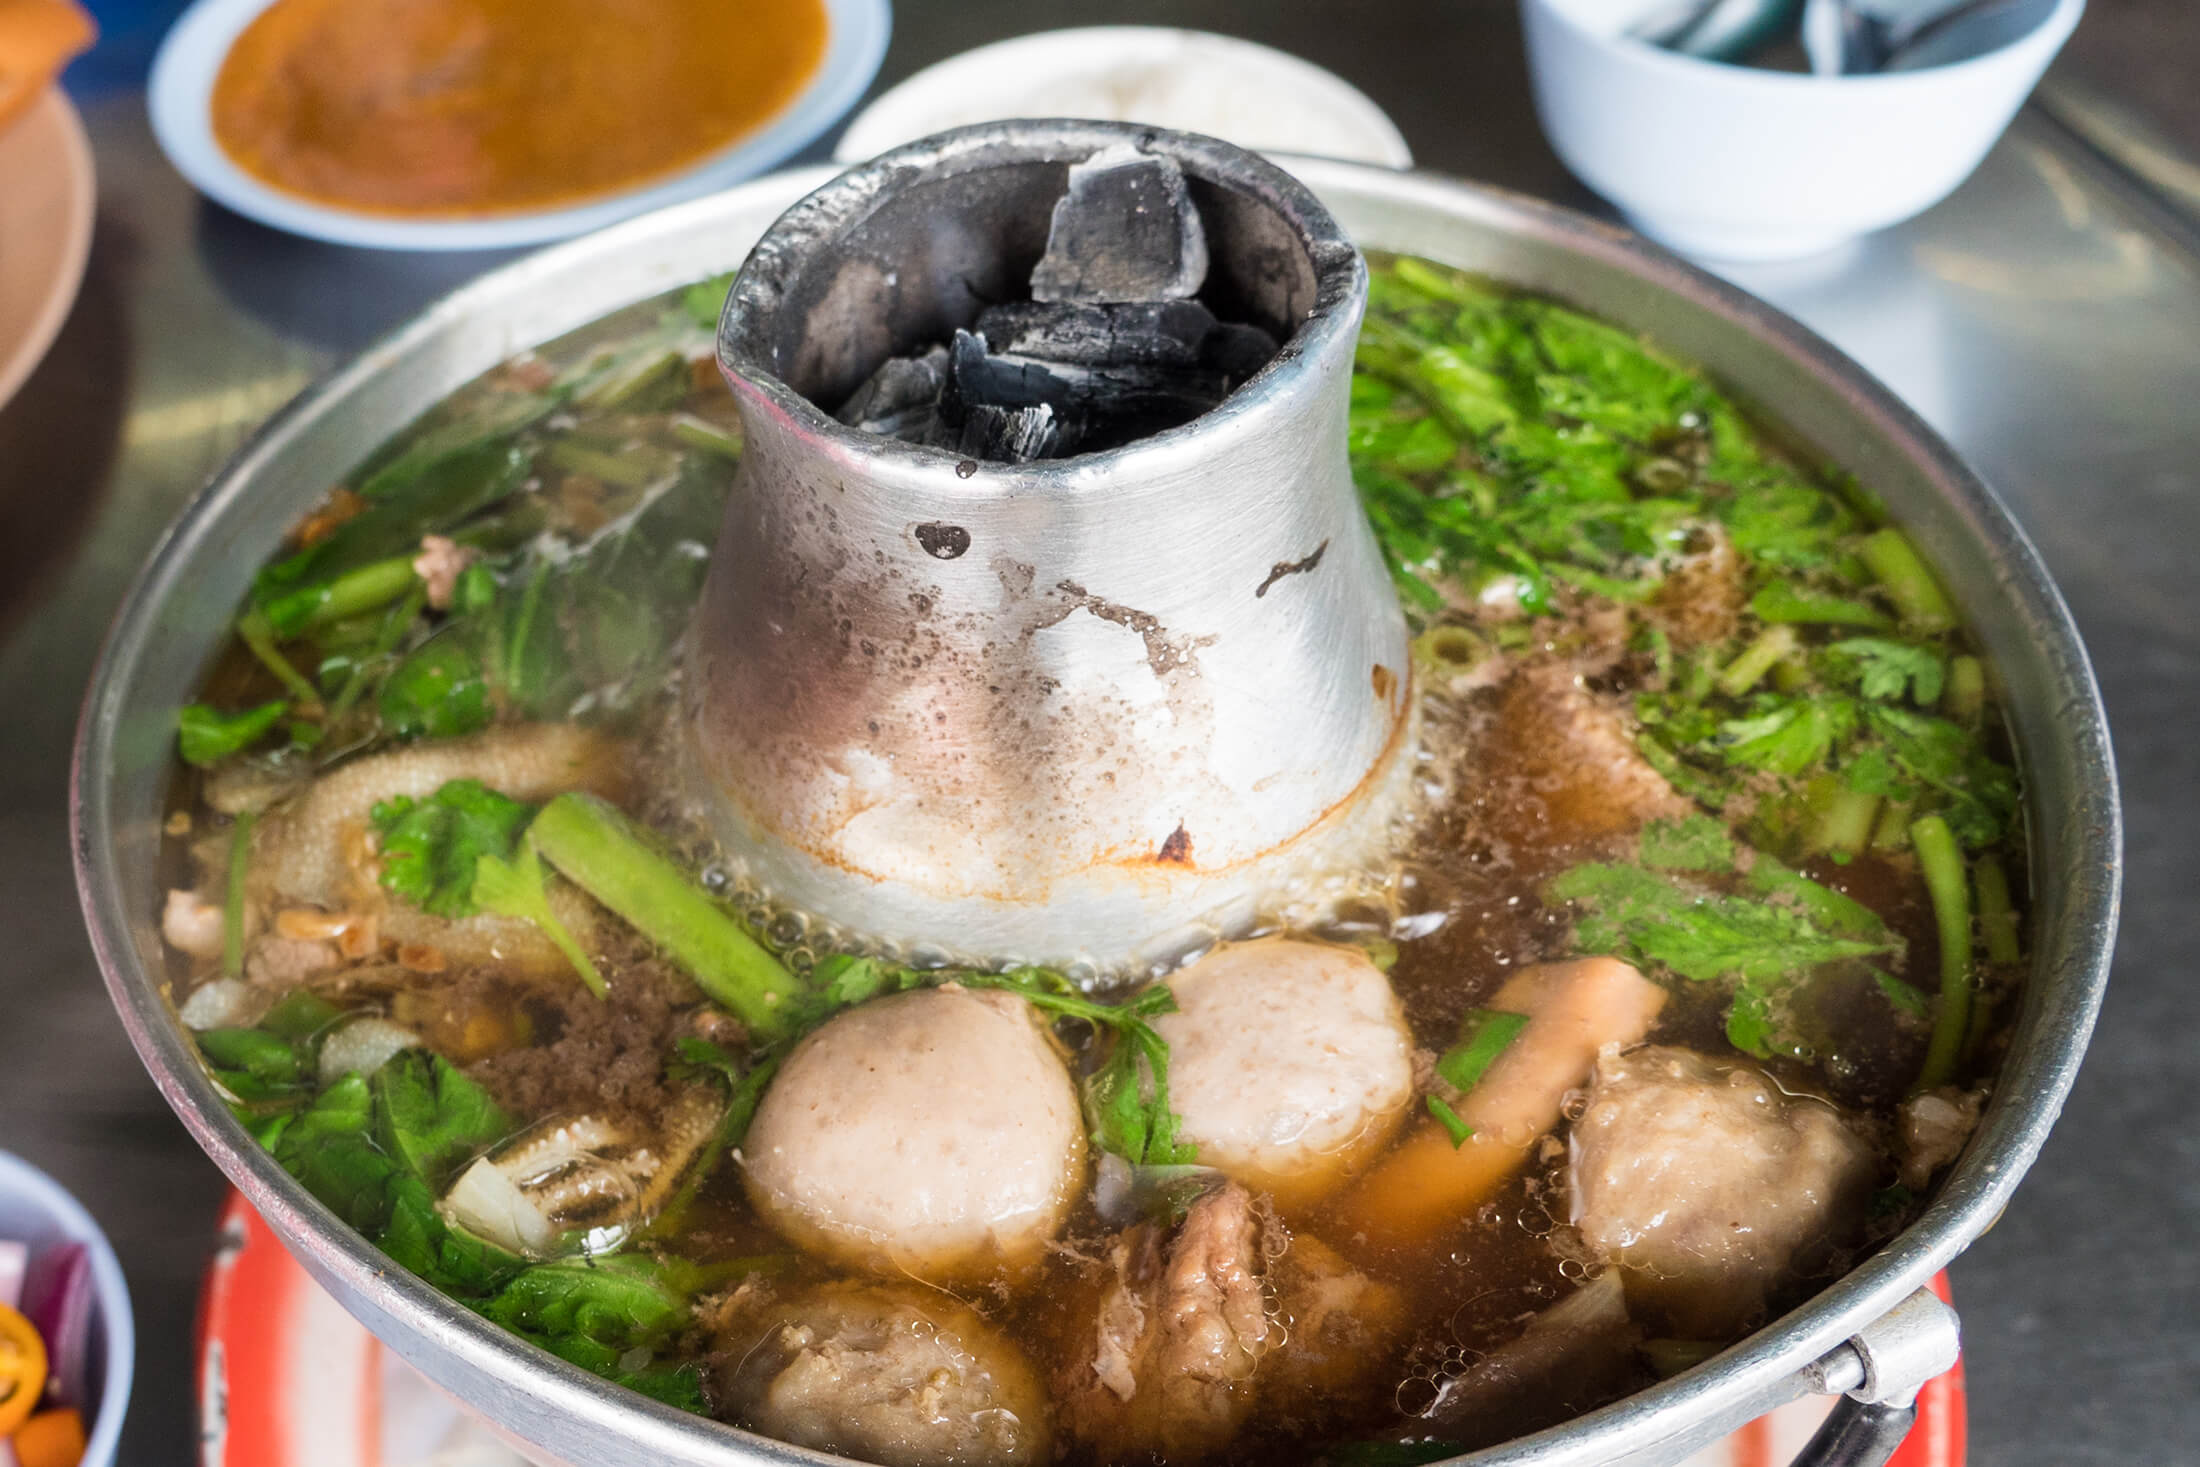 Sensational Thai Beef Fire Pot at Heng Chun Seng (ร้าน เฮ้งชุนเส็ง)